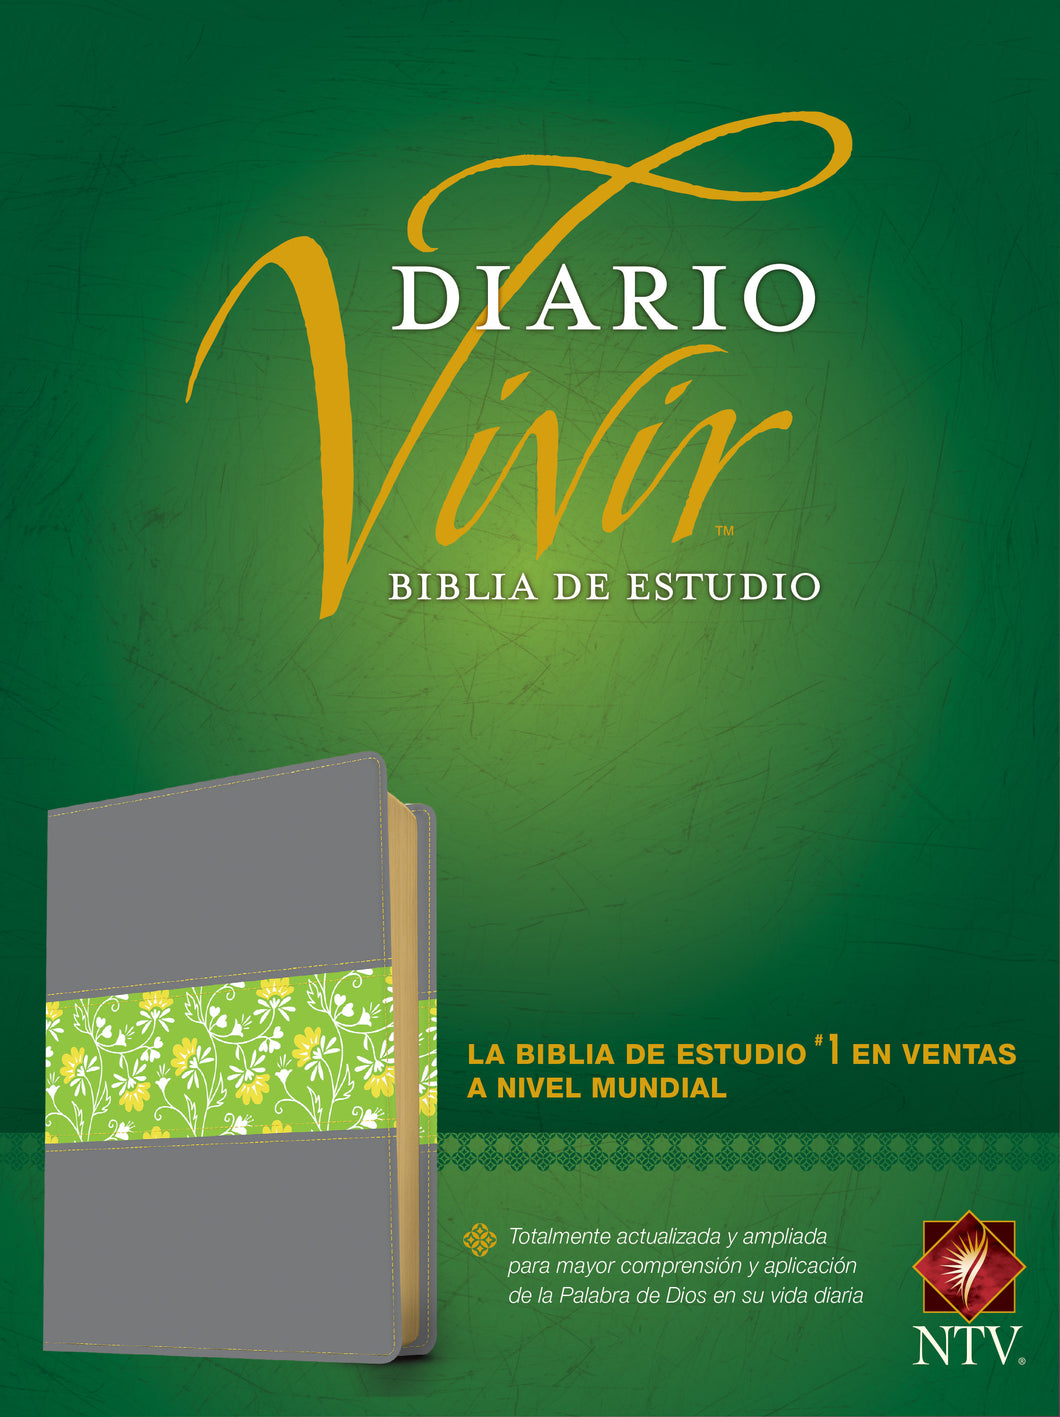 Biblia NTV - de Estudio del Diario Vivir - SentiPiel Gris/Verde